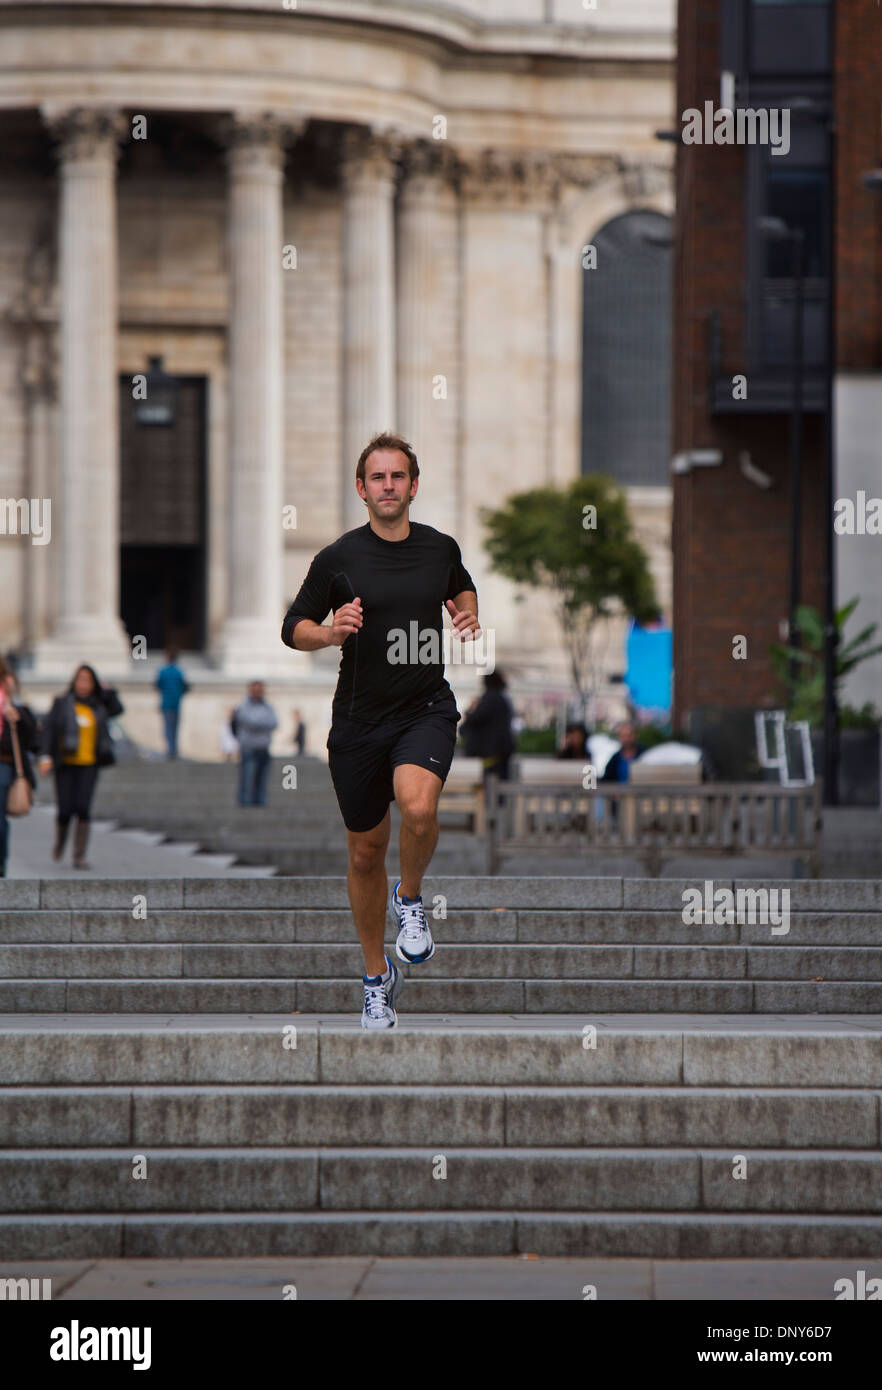 Gary Senderismo, un entrenador personal en Londres, Reino Unido, manteniendo el ajuste por correr a través de la ciudad. Foto de stock